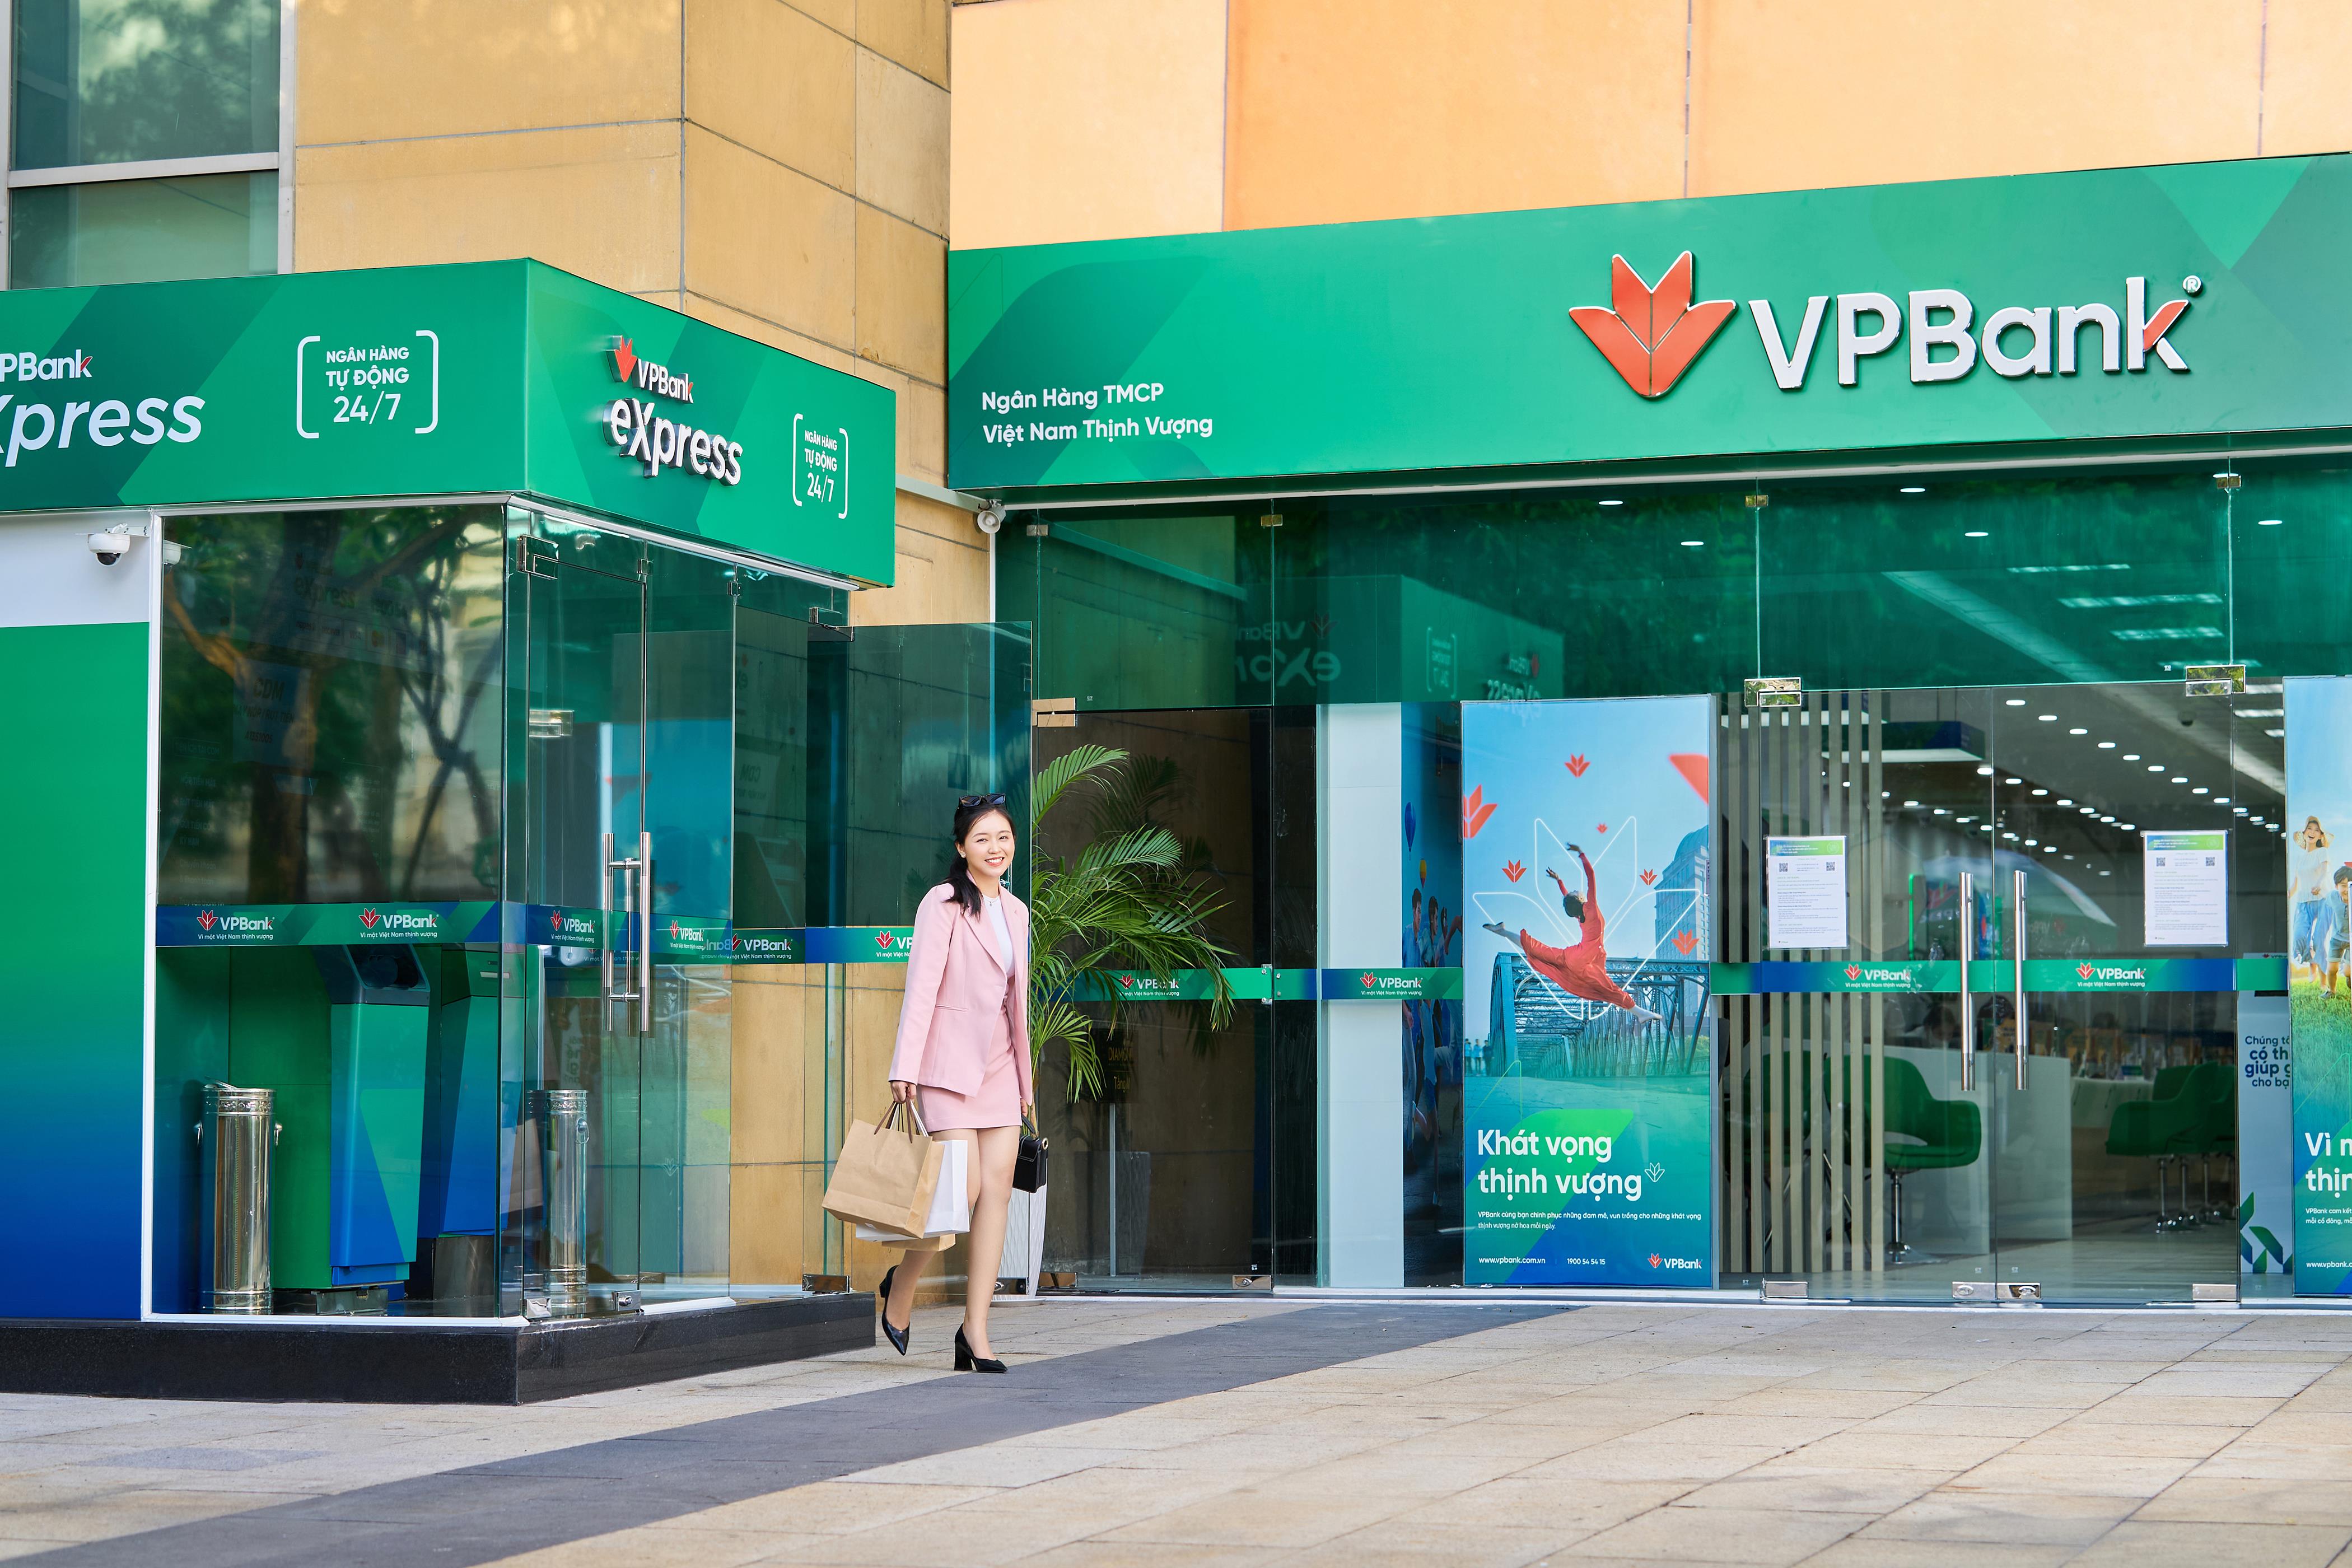 Kinh tế - VPBank ra mắt gói vay Combo Business dành cho hộ kinh doanh với lãi suất chỉ từ 5,7%/năm (Hình 4).